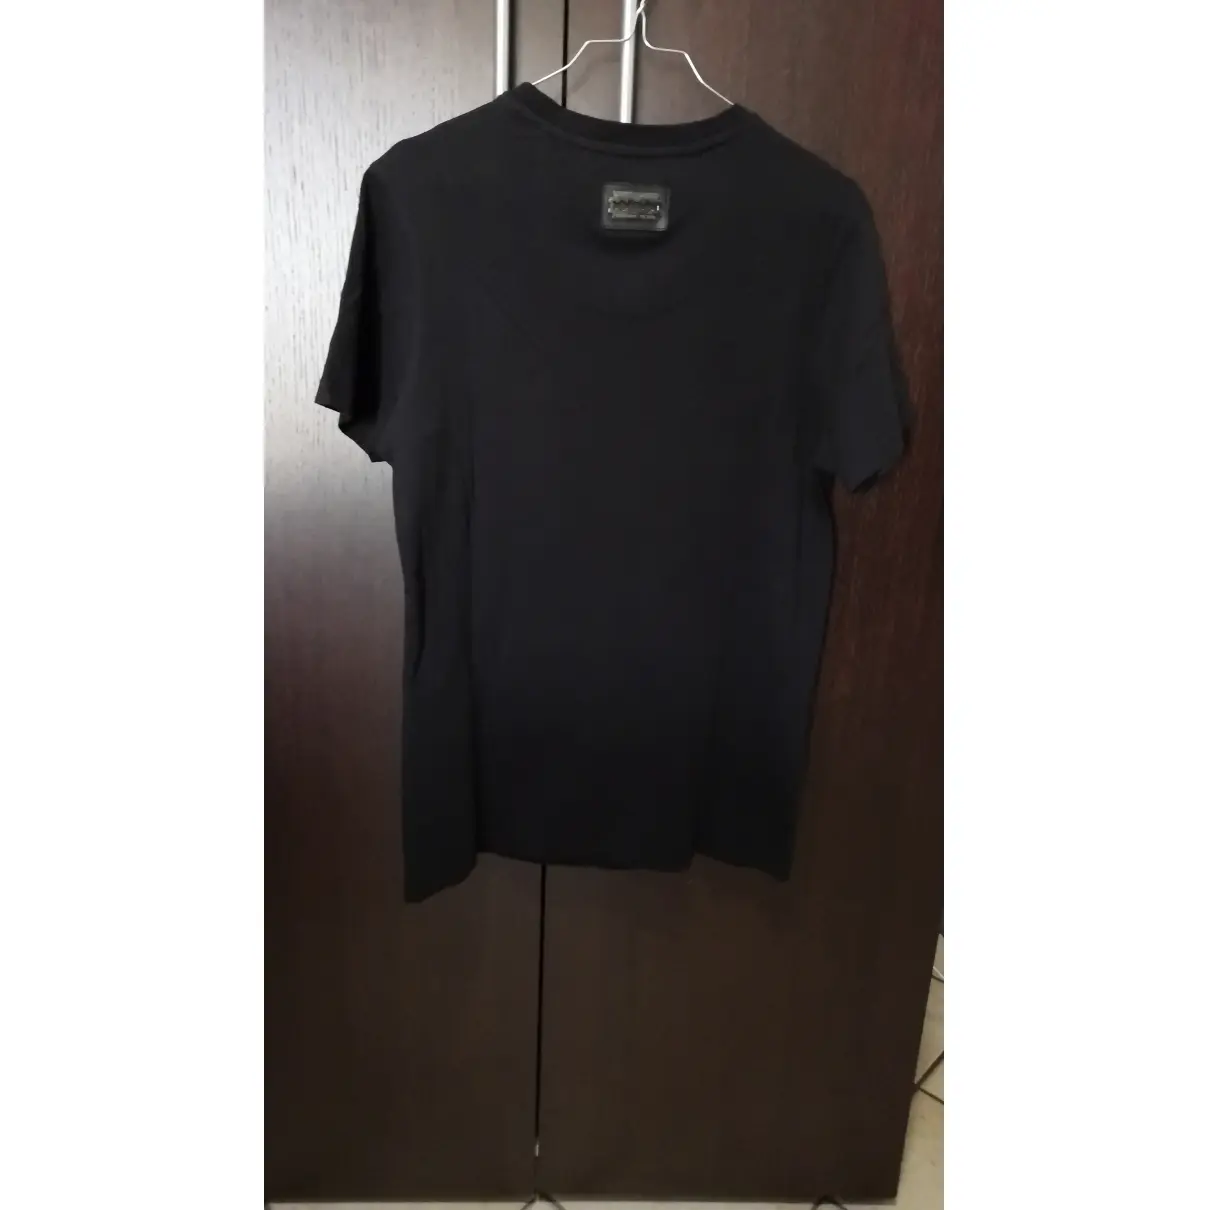 Buy Philipp Plein Black Cotton T-shirt online